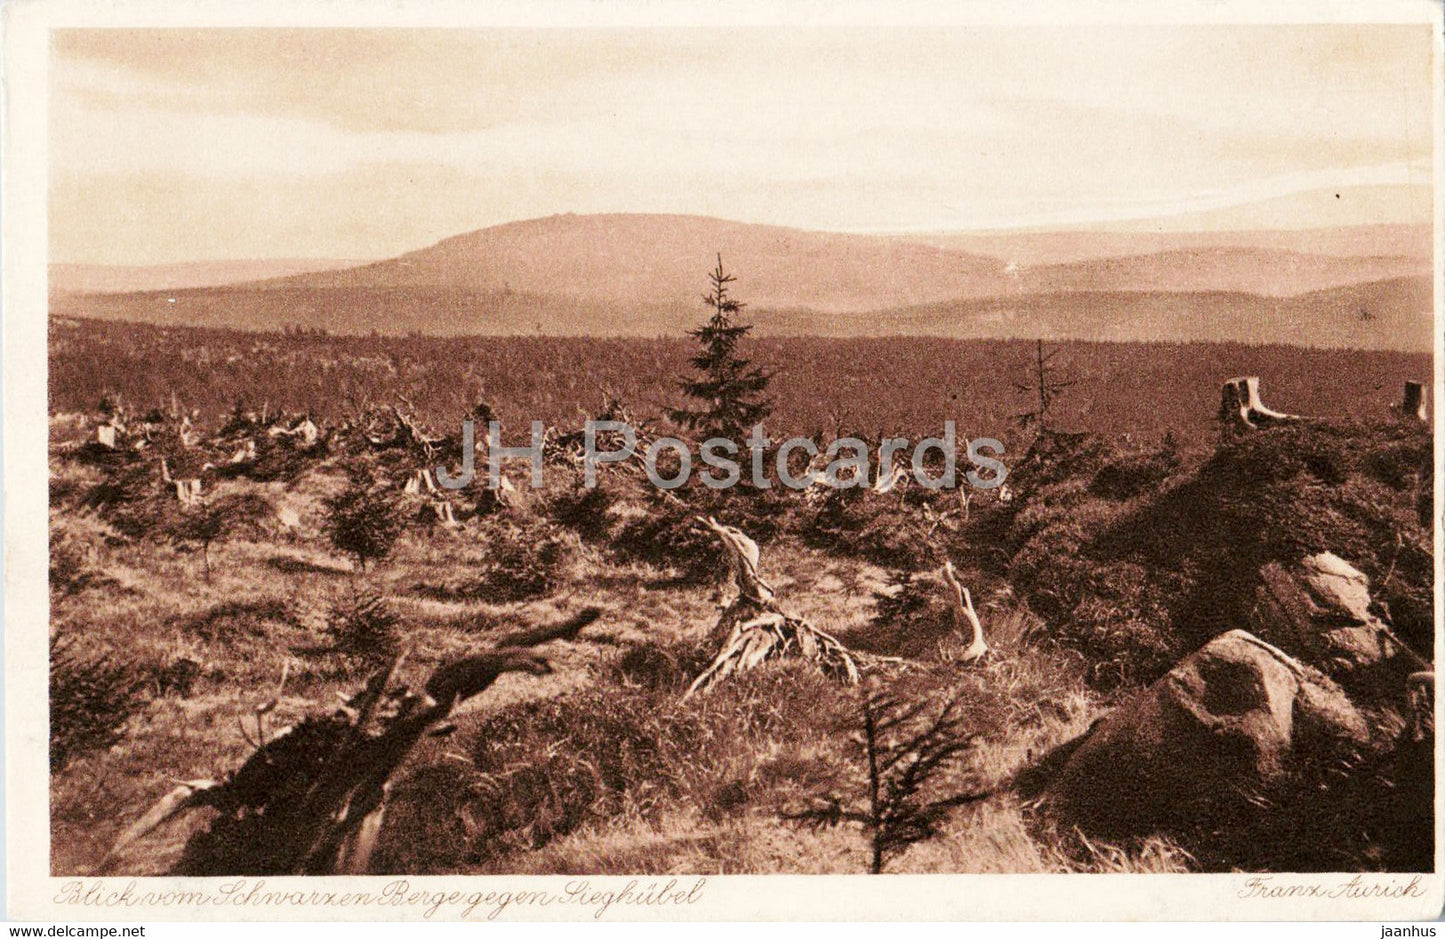 Isergebirge - Jizerske Hory - Blick vom Schwarzen Berge zum Sieghubel - old postcard - Czech Republic - unused - JH Postcards